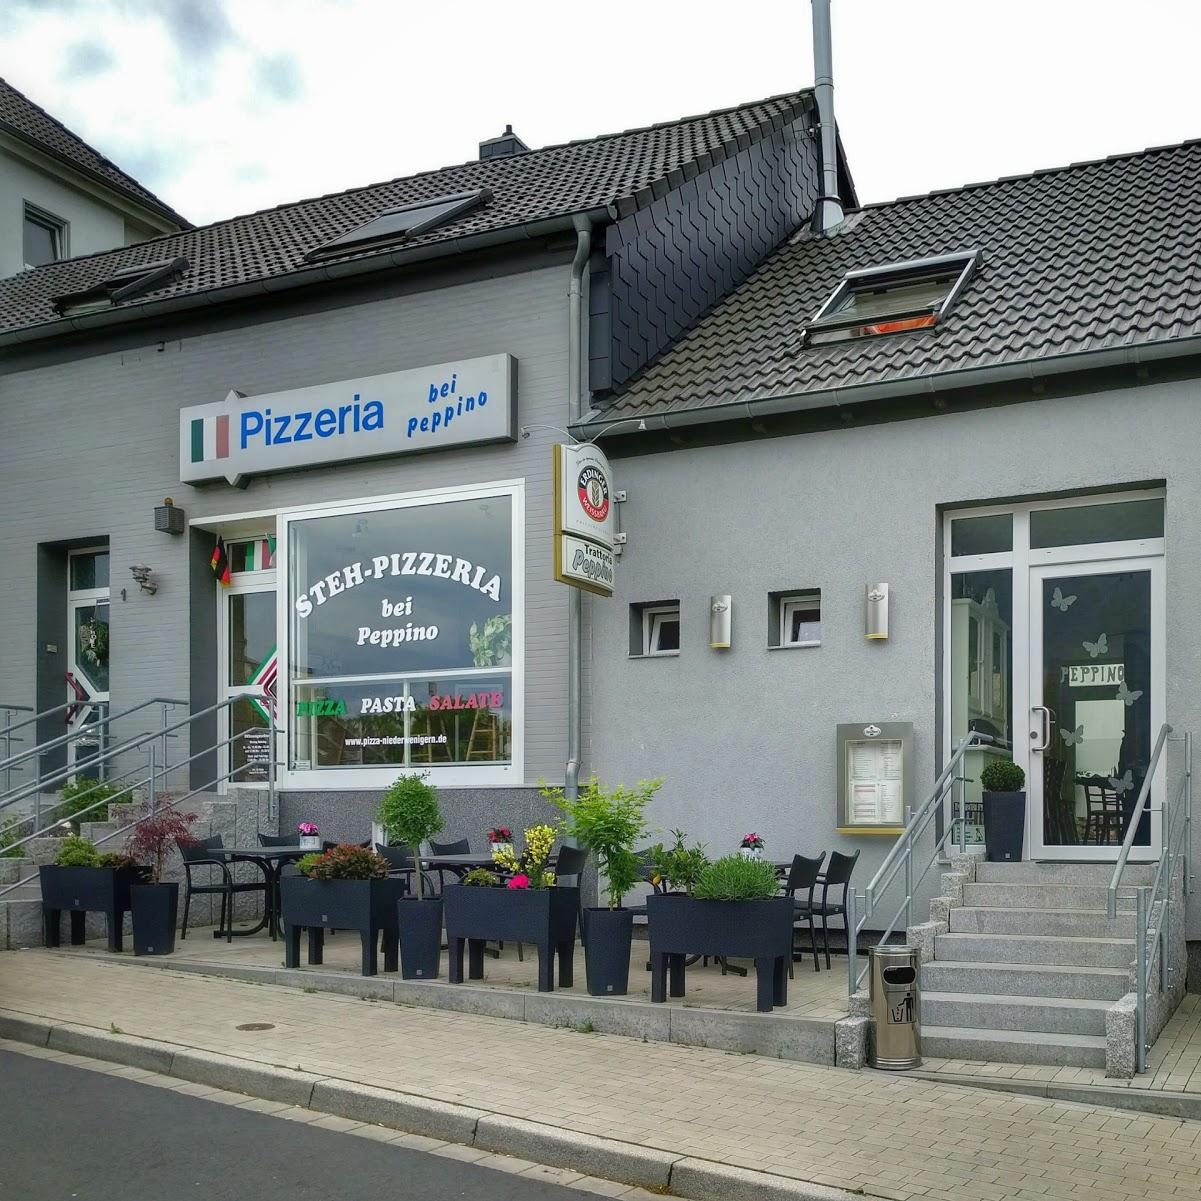 Restaurant "Pizzeria Peppino" in Hattingen